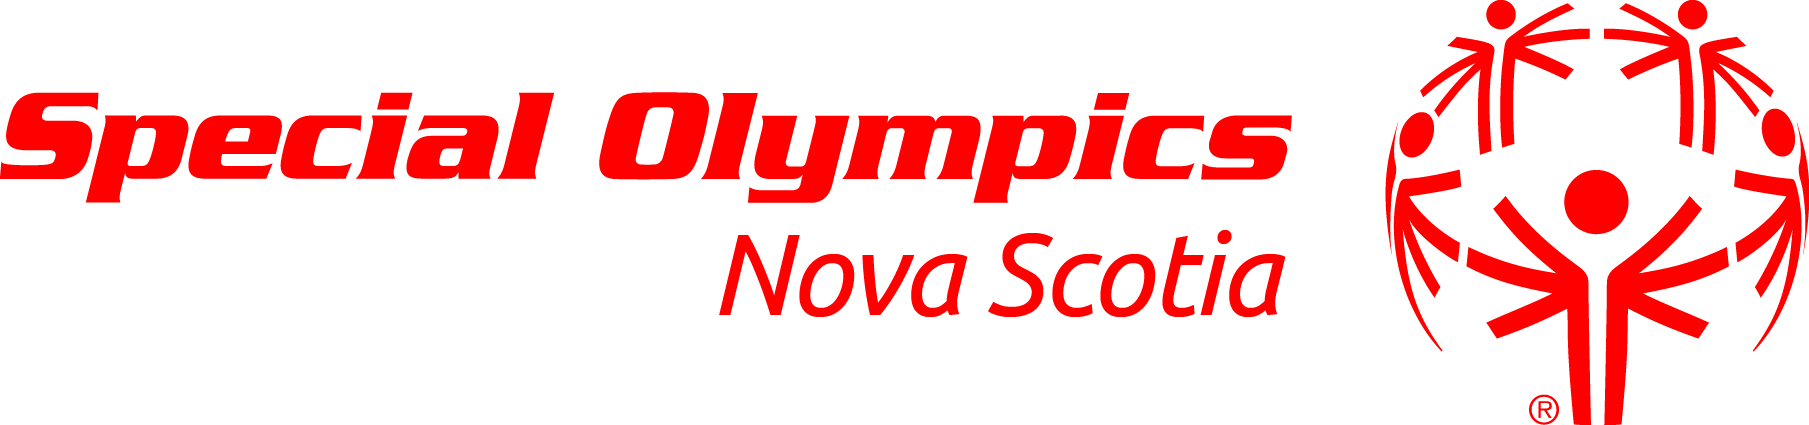 Special Olympics Nova Scotia logo